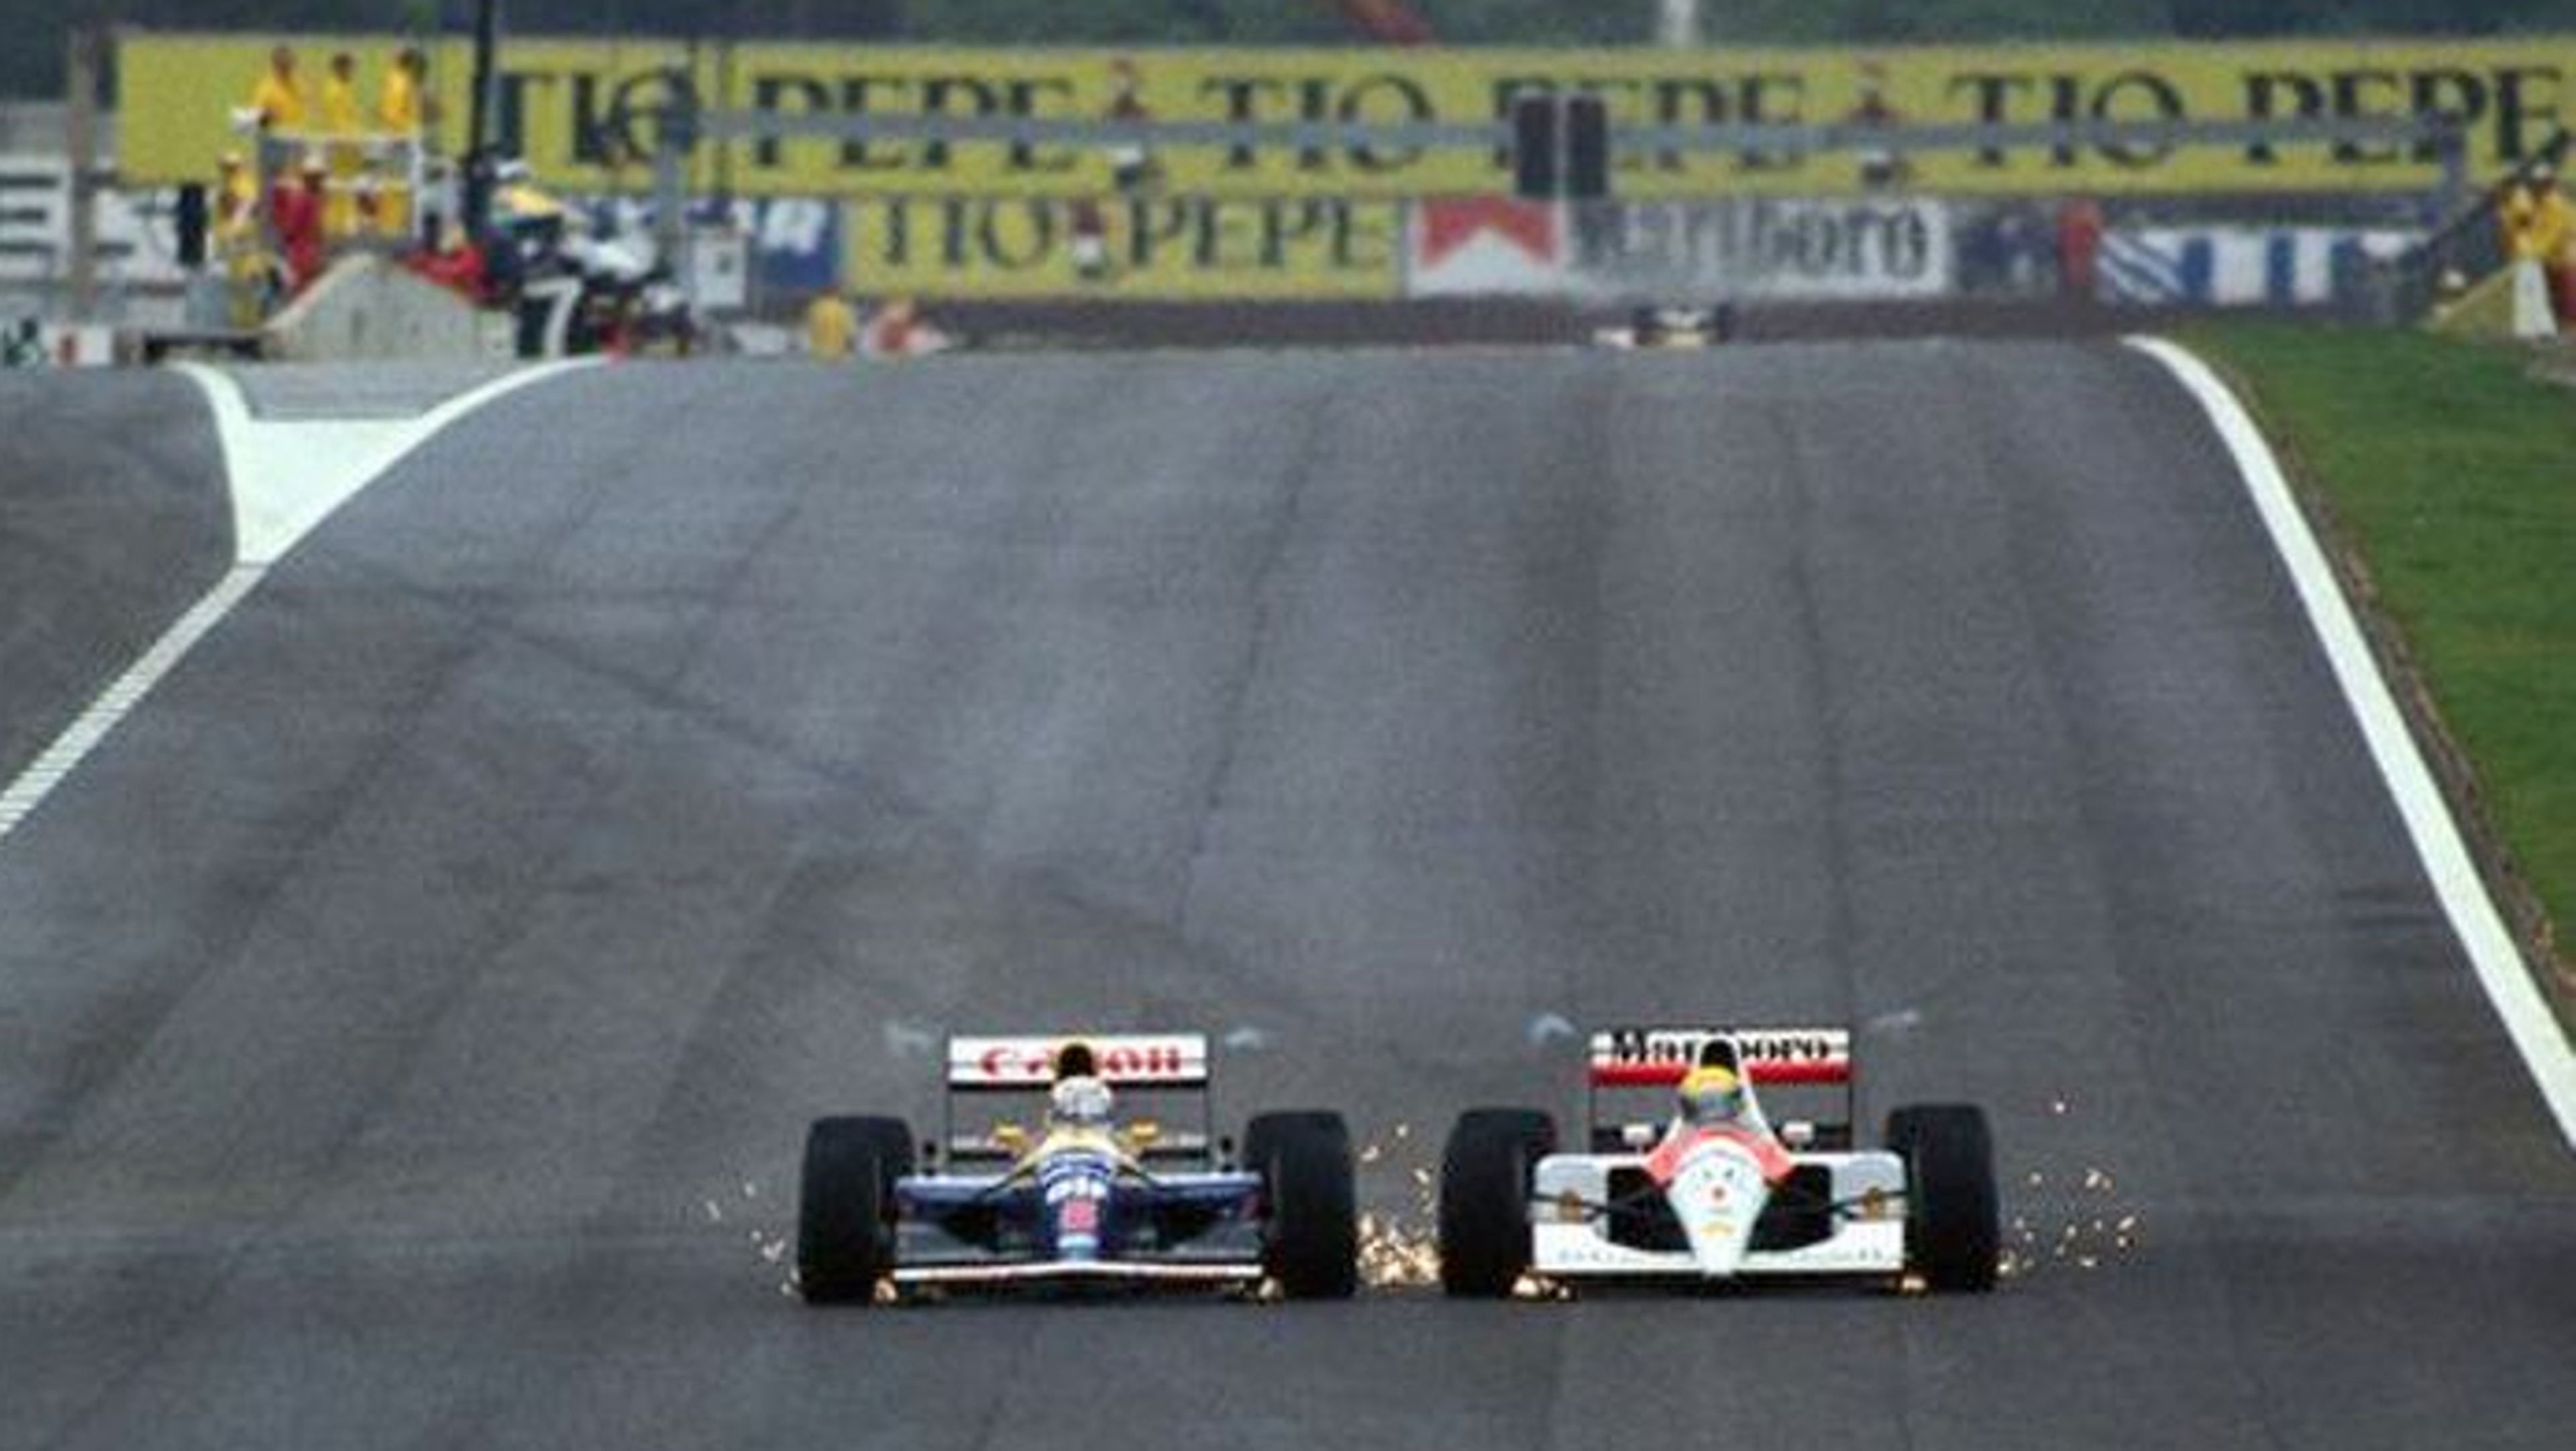 El GP de España ha vivido grandes duelos, pero ninguno como el Senna-Mansell del 91